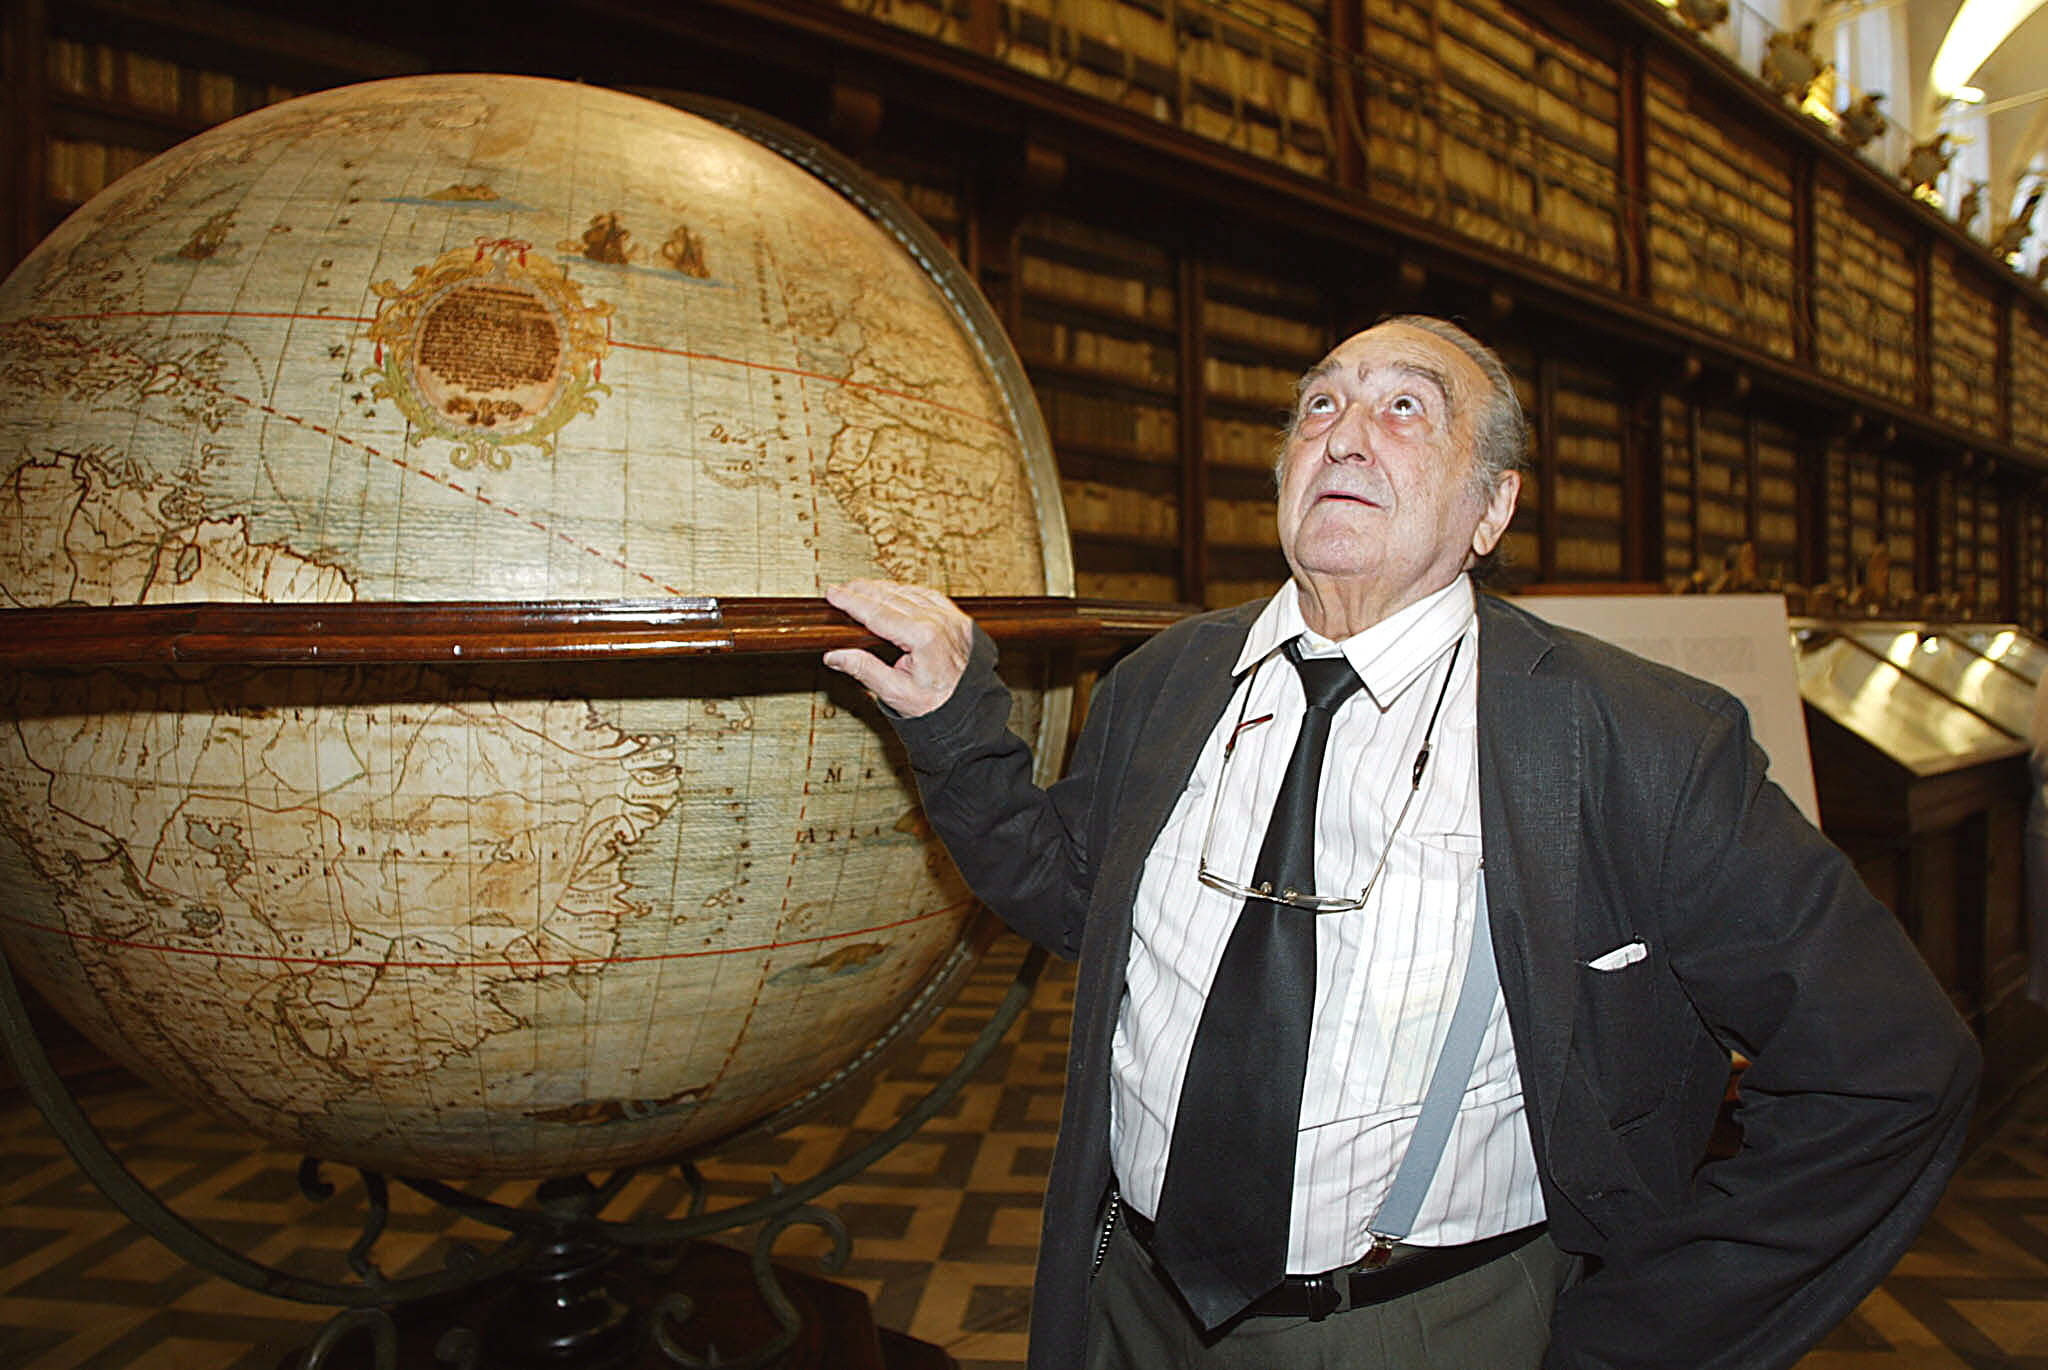 El escritor español, Premio Cervantes de 2004, observa la Biblioteca Casanatense donde inauguró una exposición dedicada a su obra.